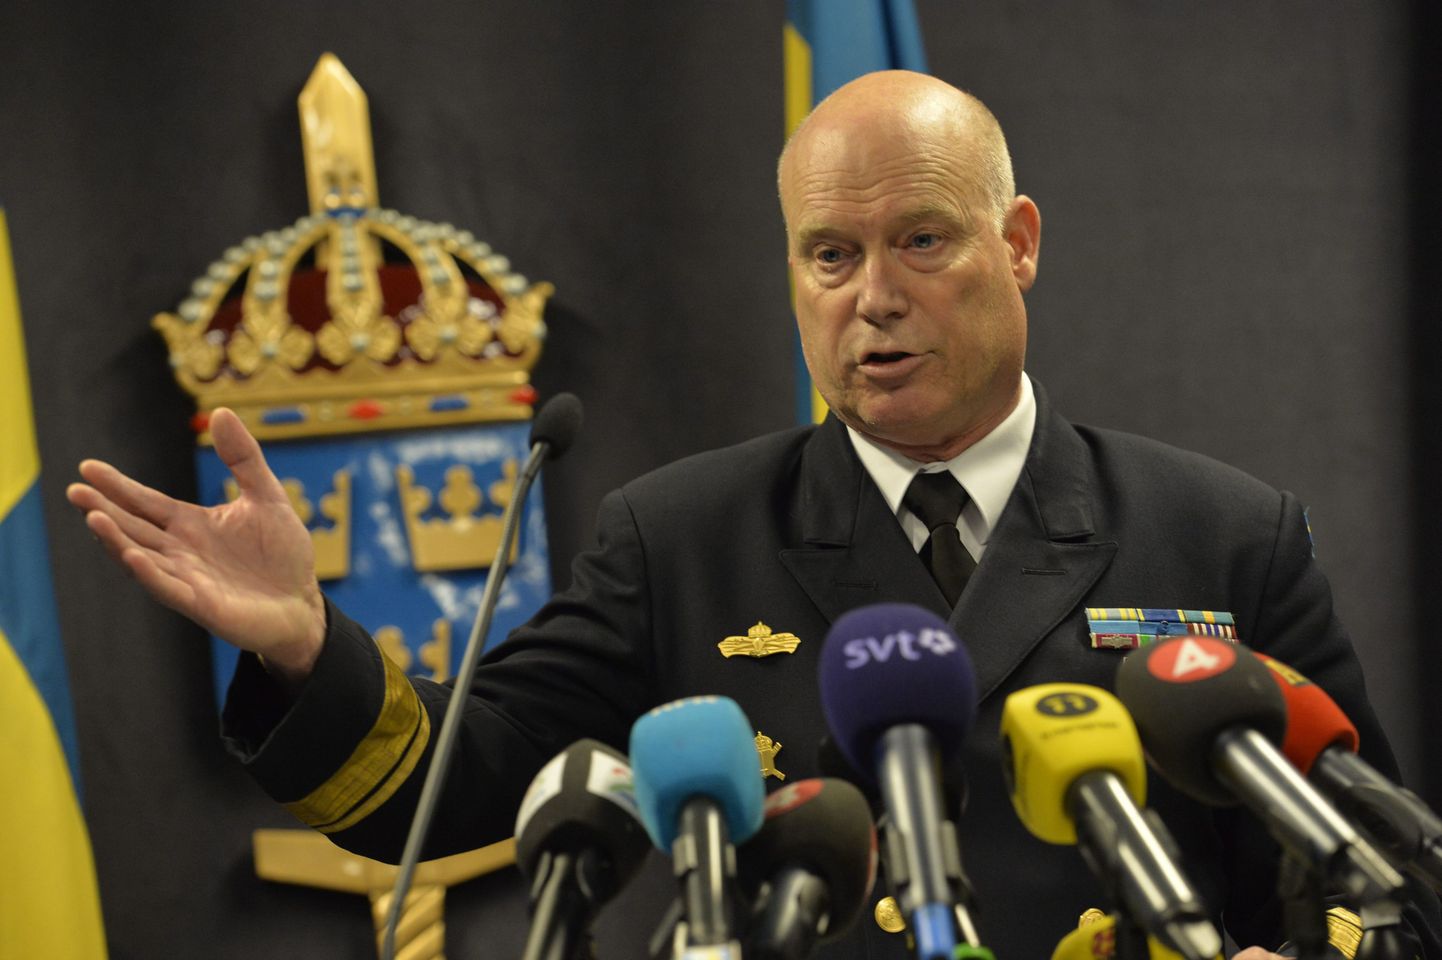 Kontradmiral Anders Grenstad teeb ülevaate Stockholmi saarestikus toimunud operatsioonist.